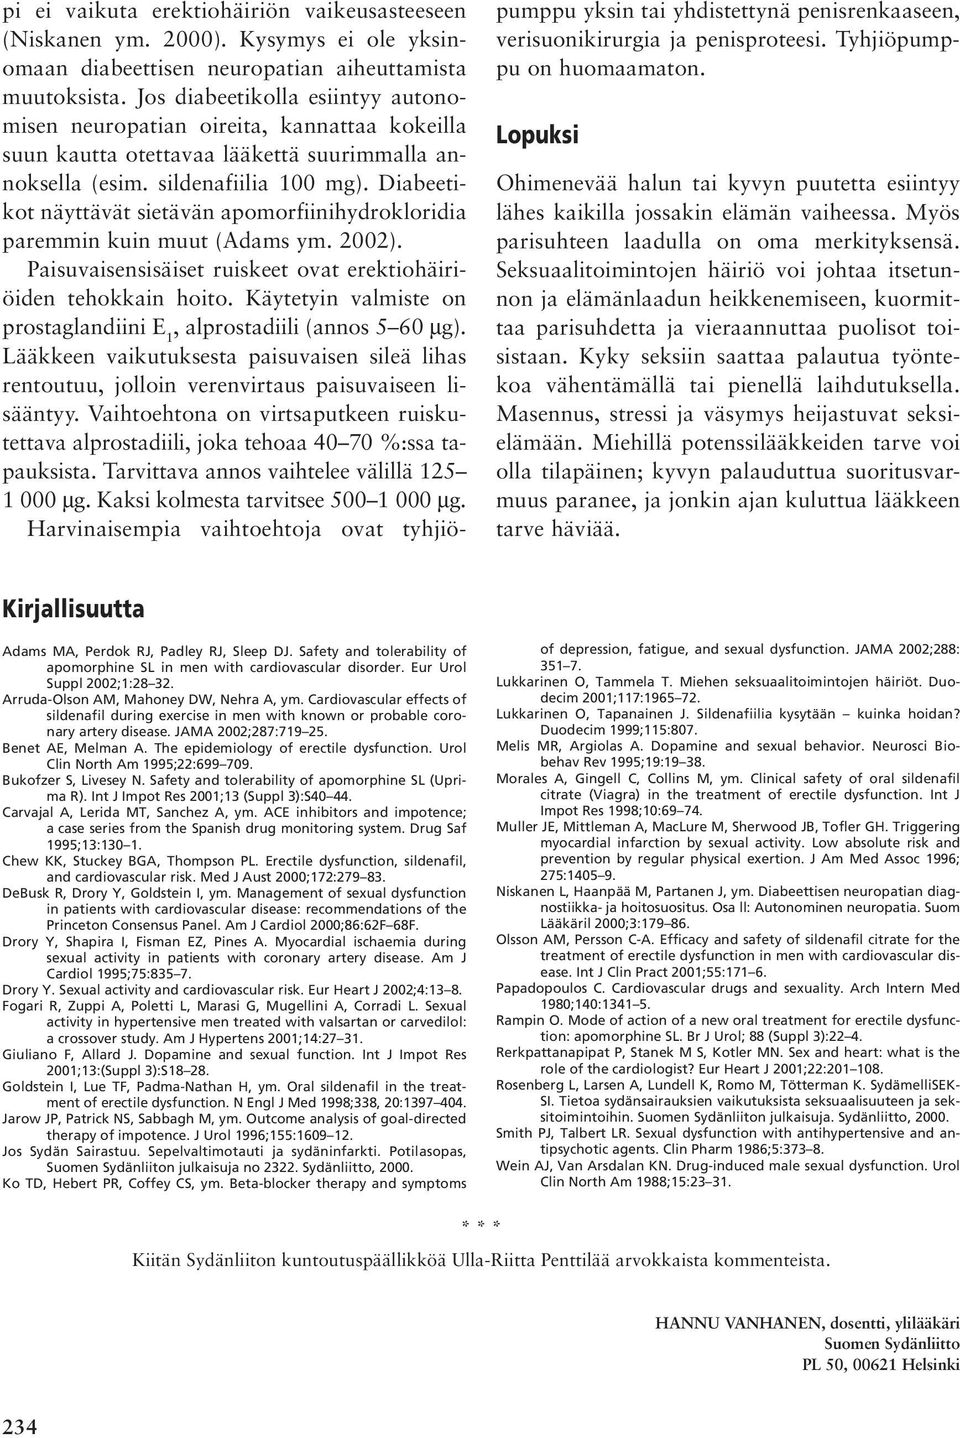 Diabeetikot näyttävät sietävän apomorfiinihydrokloridia paremmin kuin muut (Adams ym. 2002). Paisuvaisensisäiset ruiskeet ovat erektiohäiriöiden tehokkain hoito.